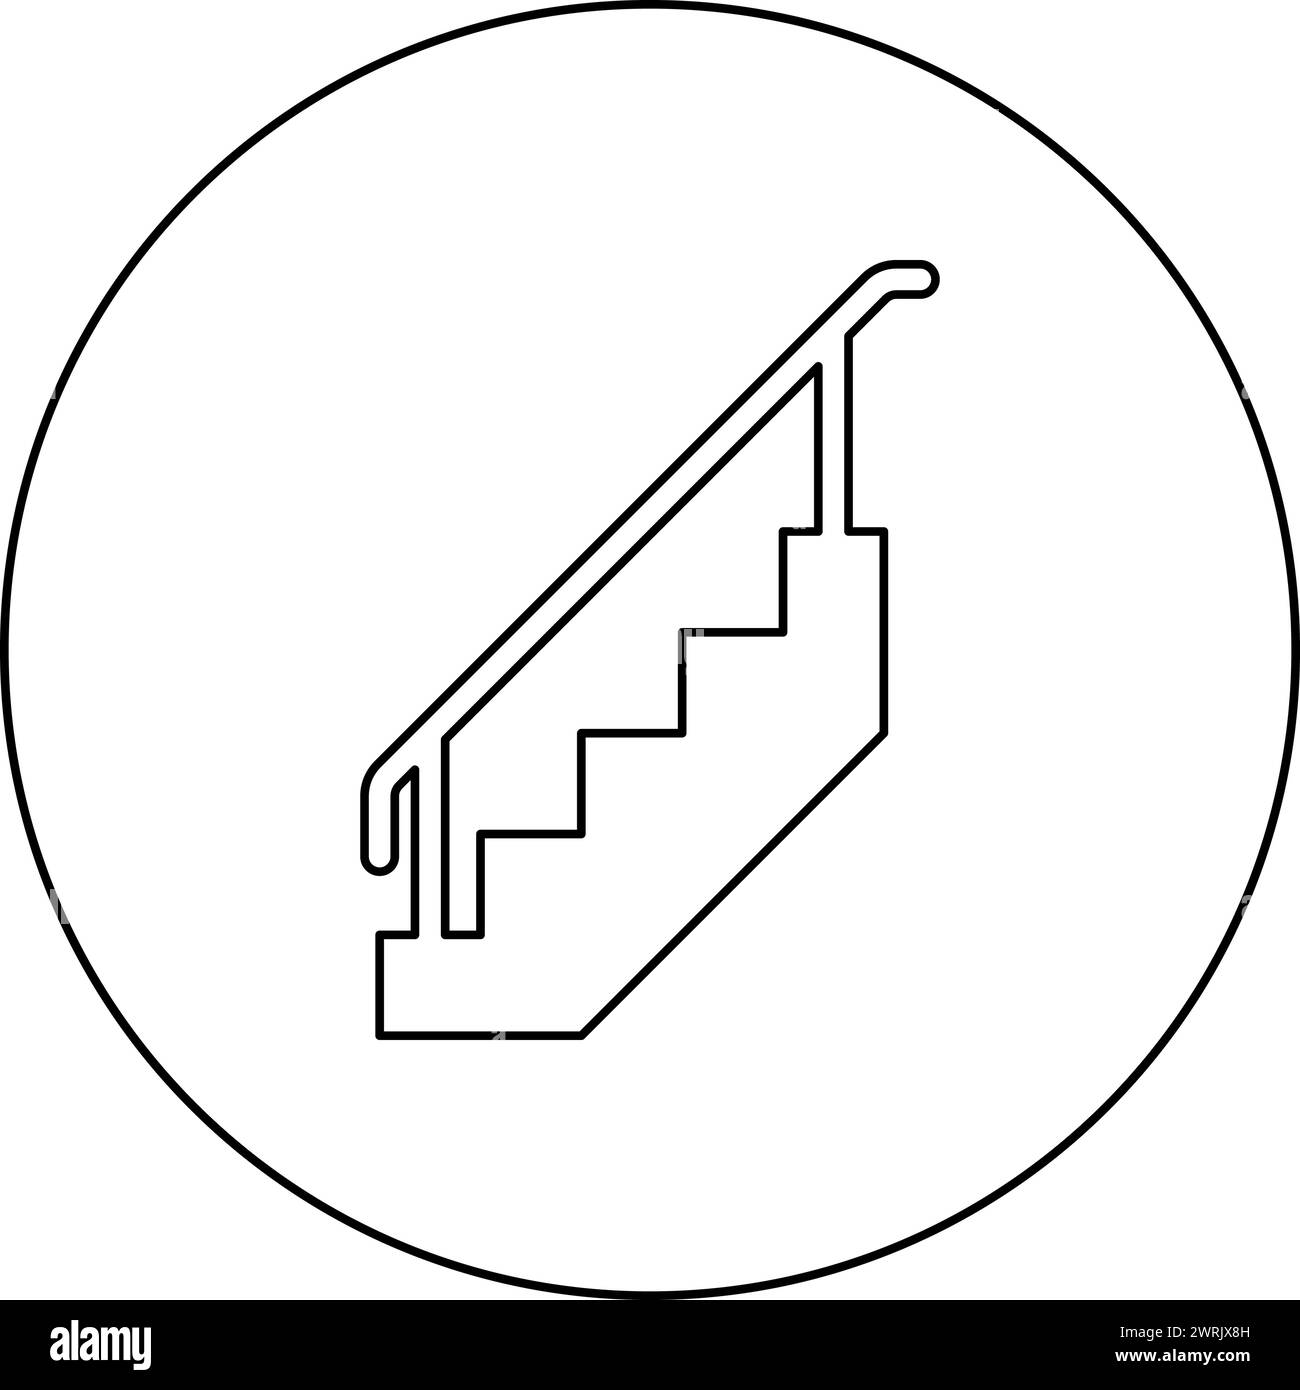 Escalier avec des garde-corps escaliers avec l'icône d'escalier de clôture d'échelle de main courante en cercle rond de couleur noire illustration vectorielle ligne de contour d'image de contour Illustration de Vecteur